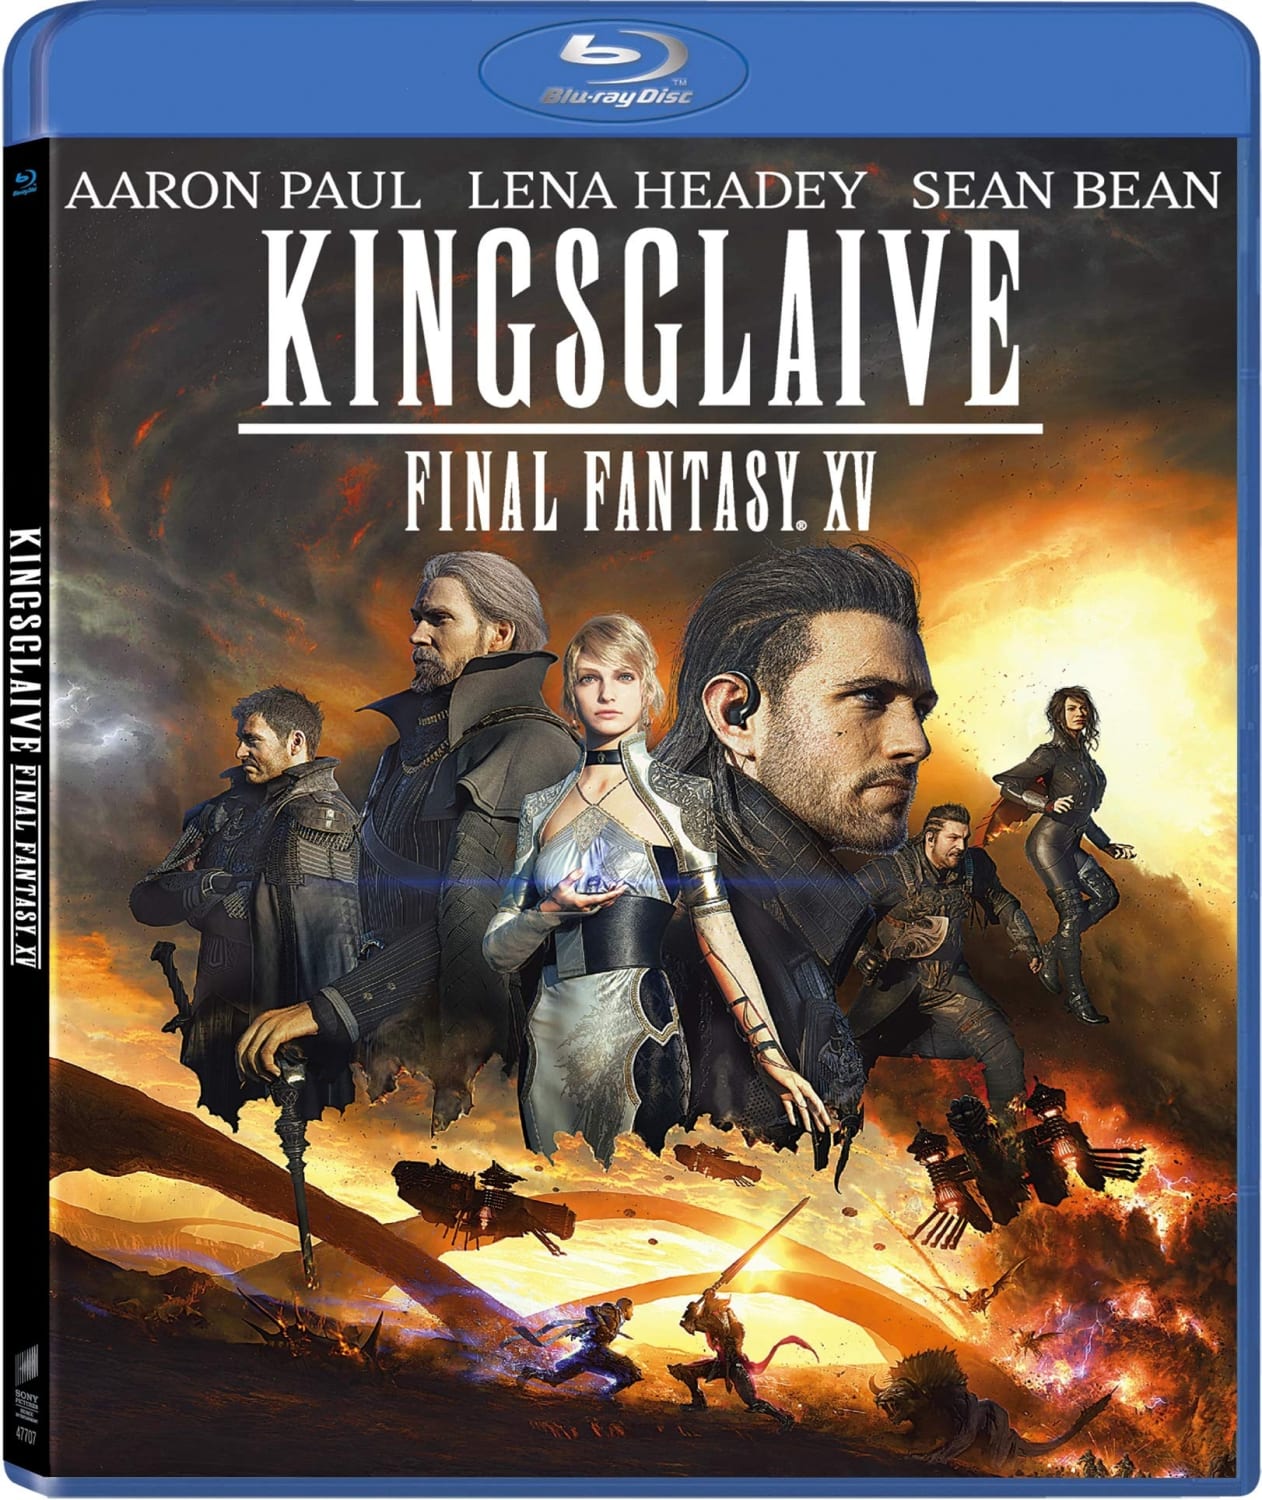 Kingsglaive: Final Fantasy XV (Blu-ray) on MovieShack